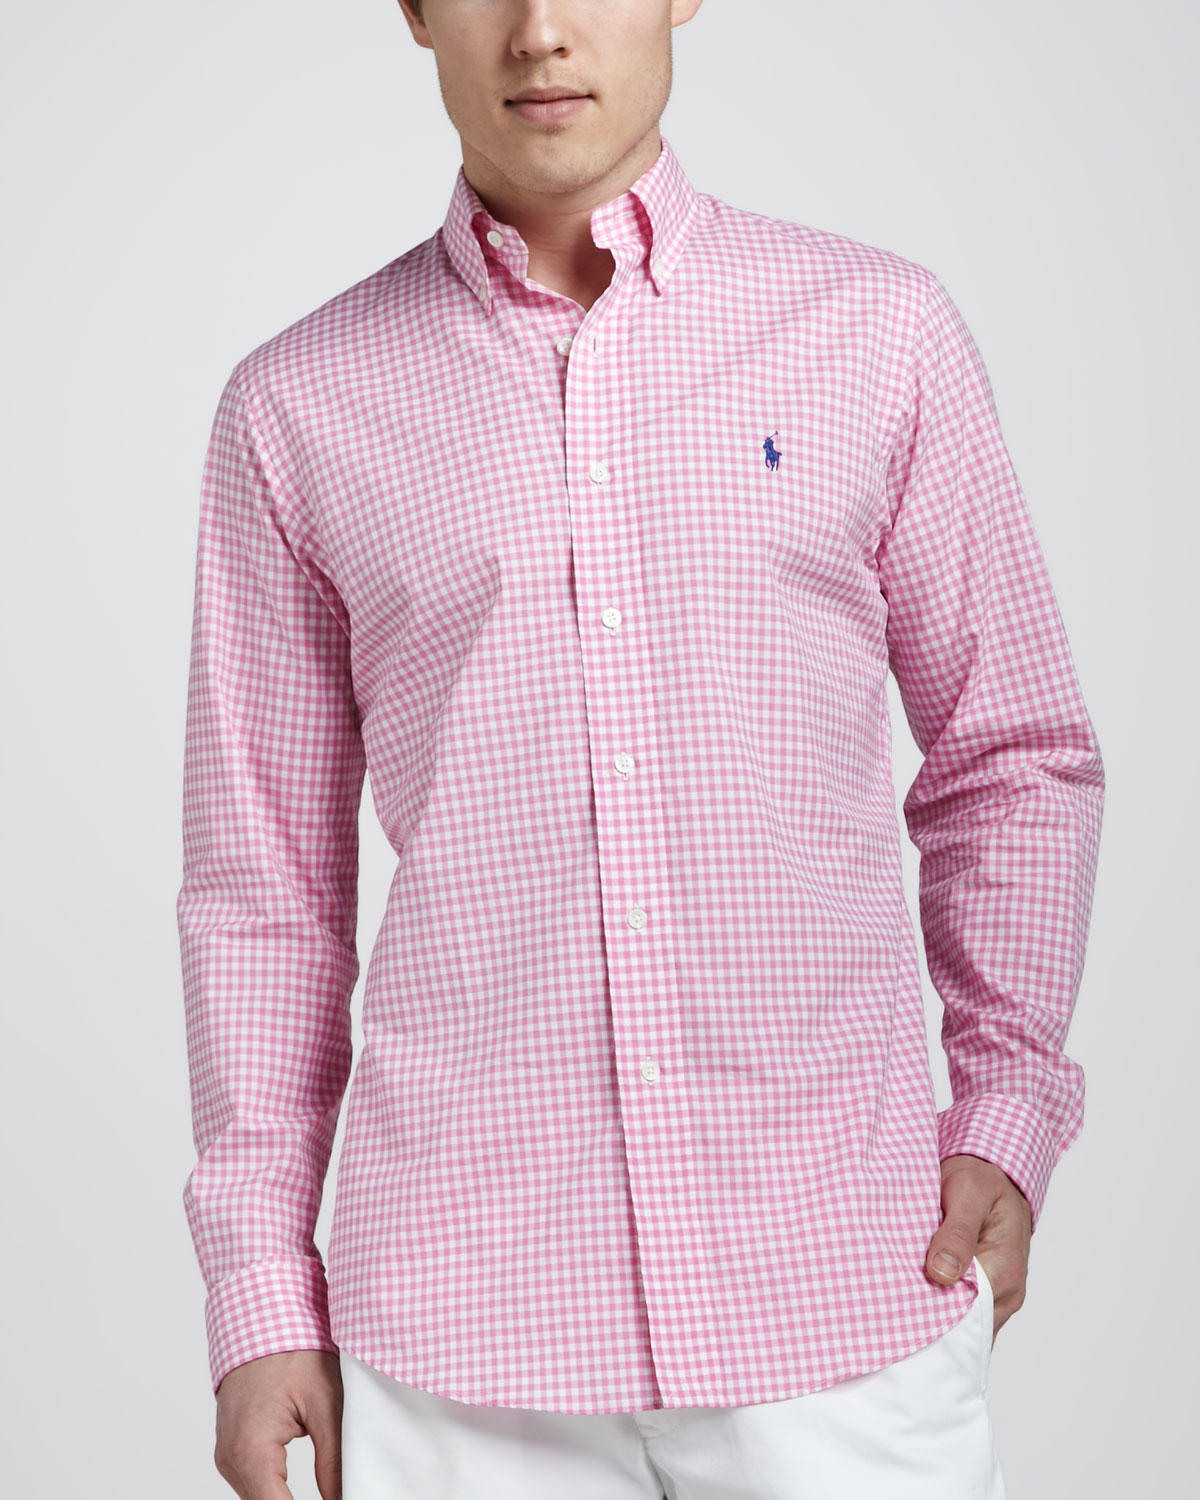 ralph lauren pink gingham shirt